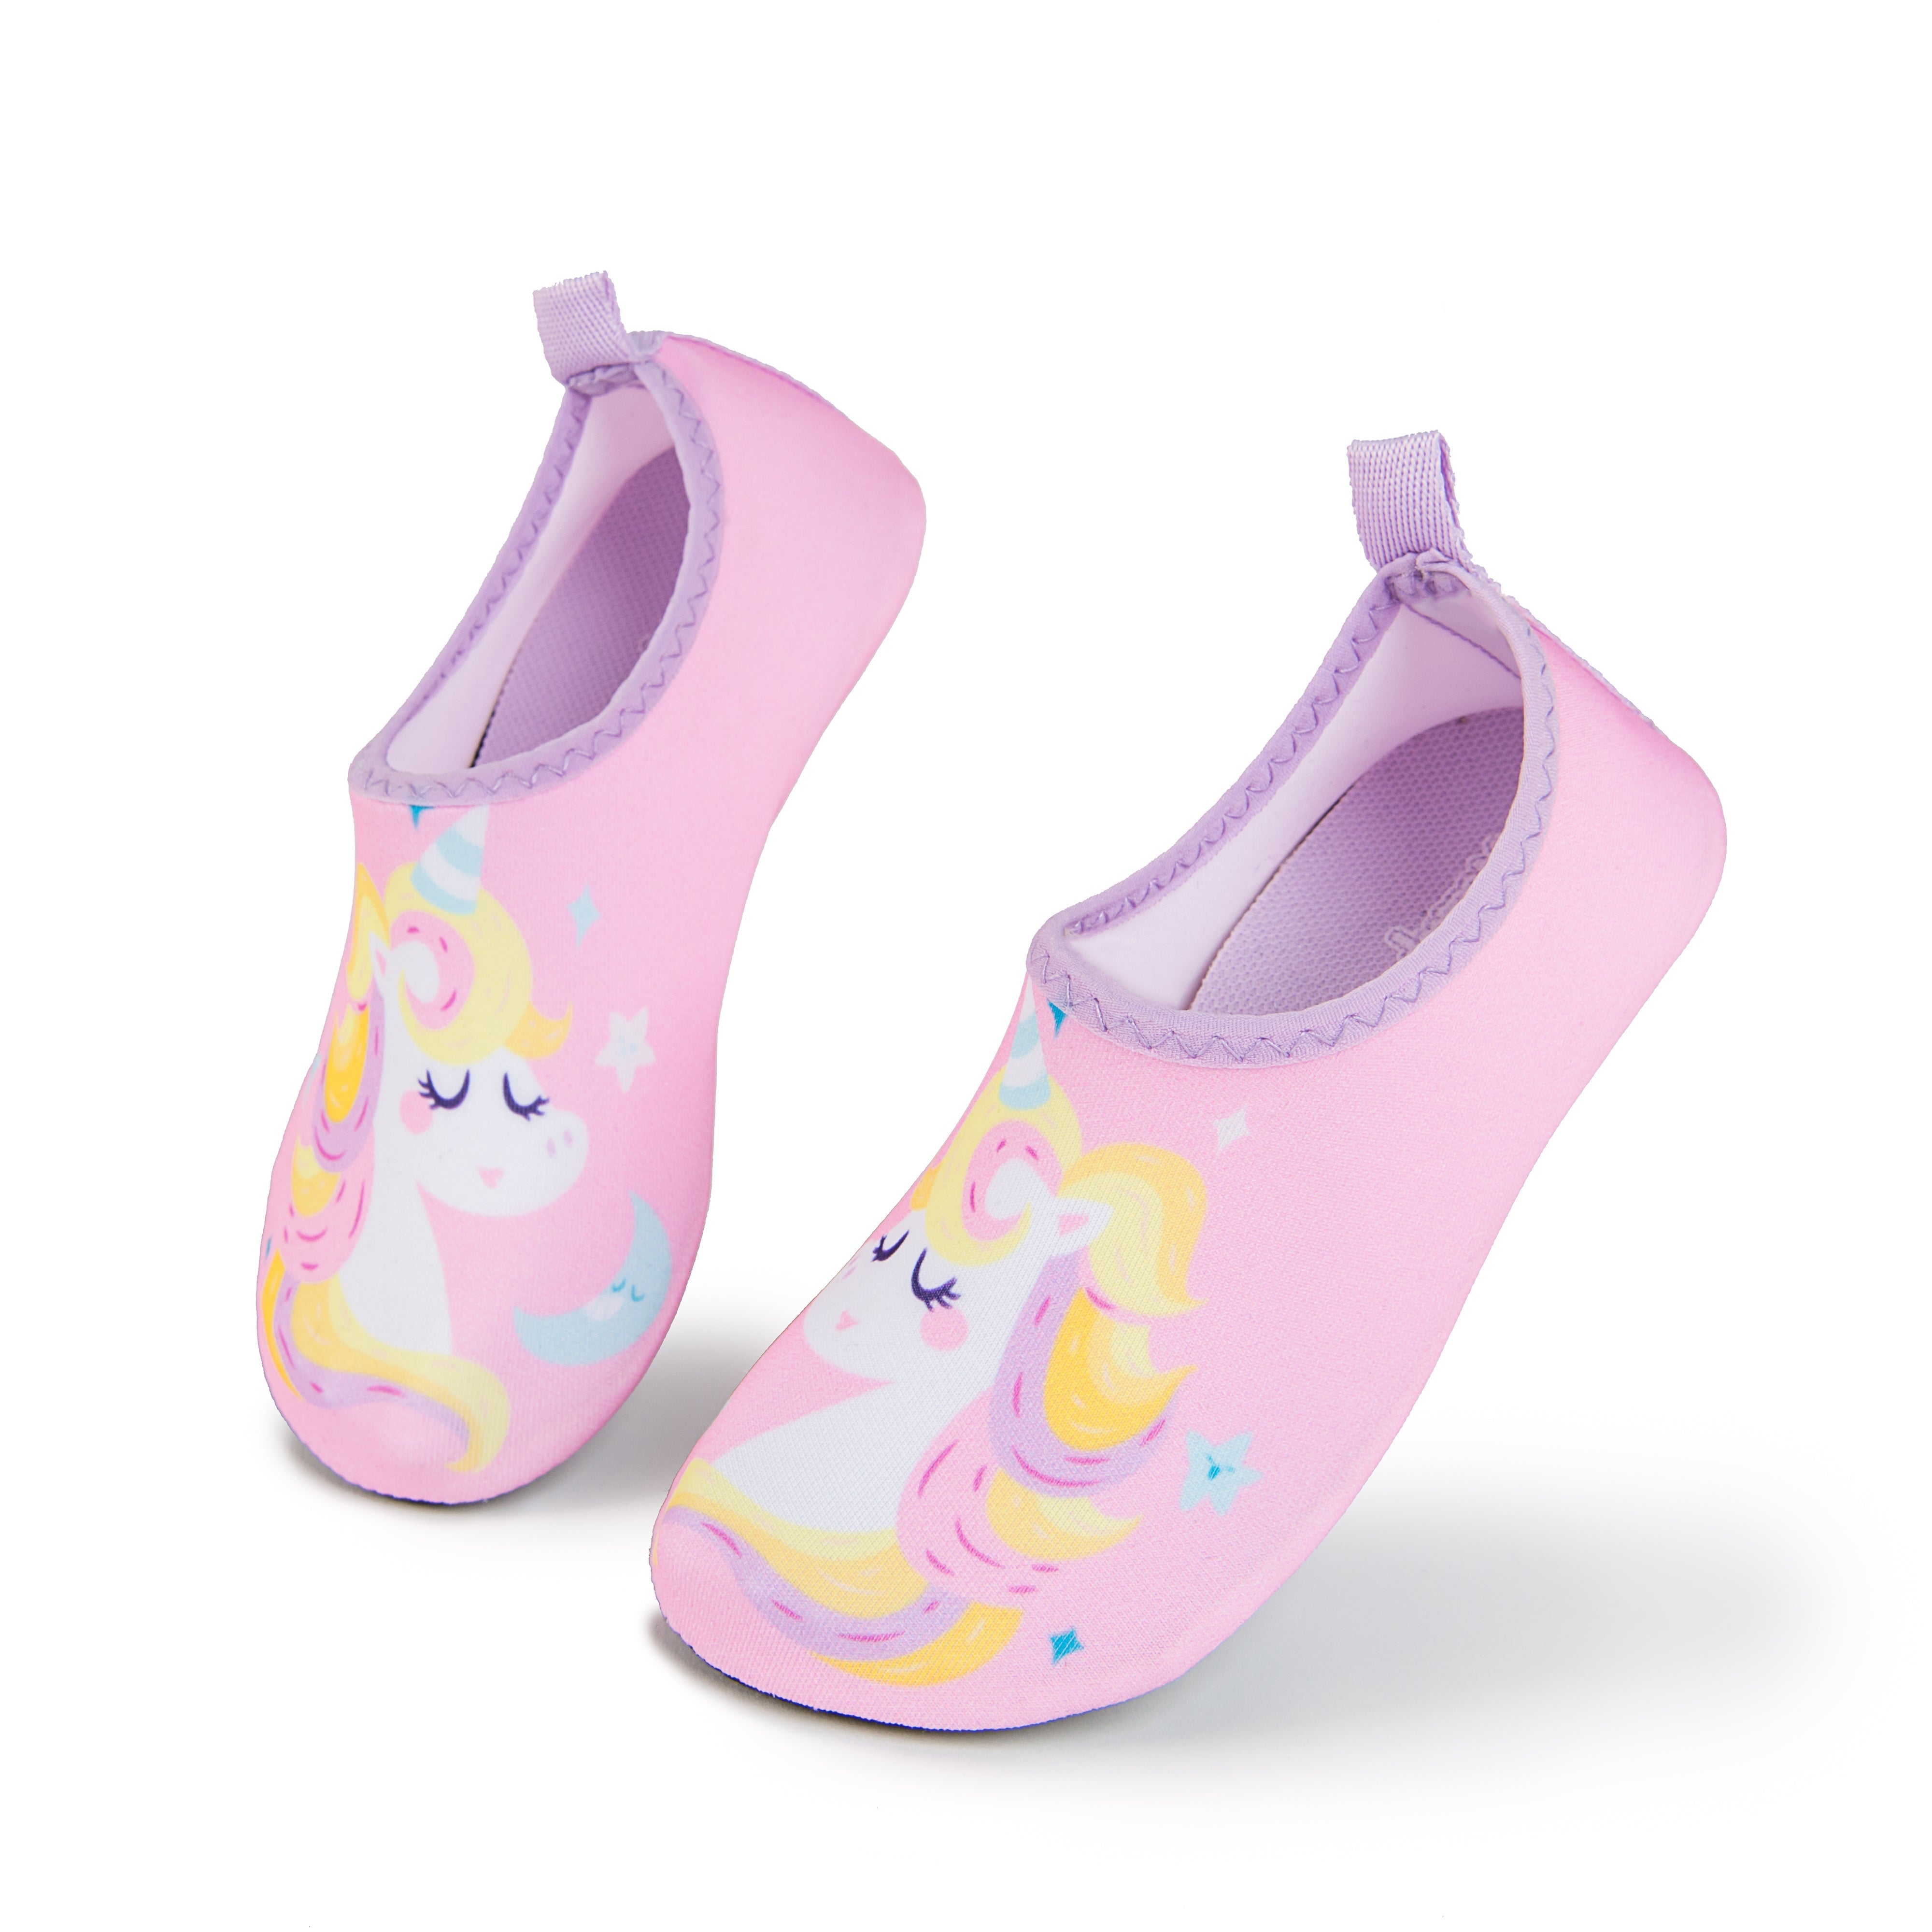 Aqua Sock Shoes Unicorn Style